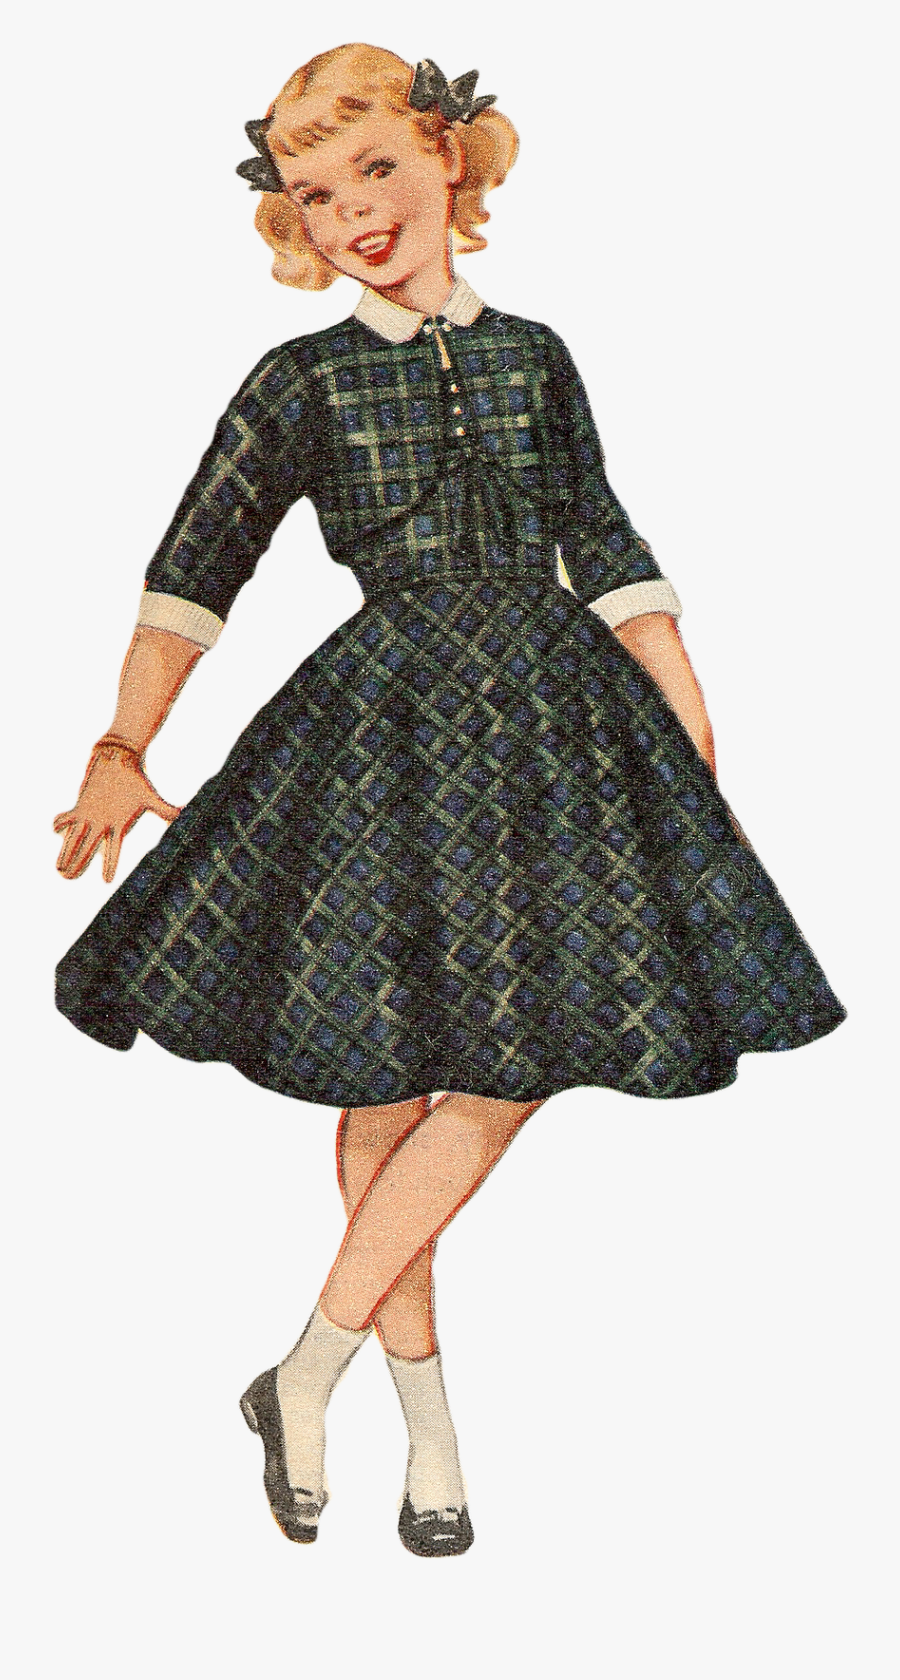 Vintage Girl Png, Transparent Clipart